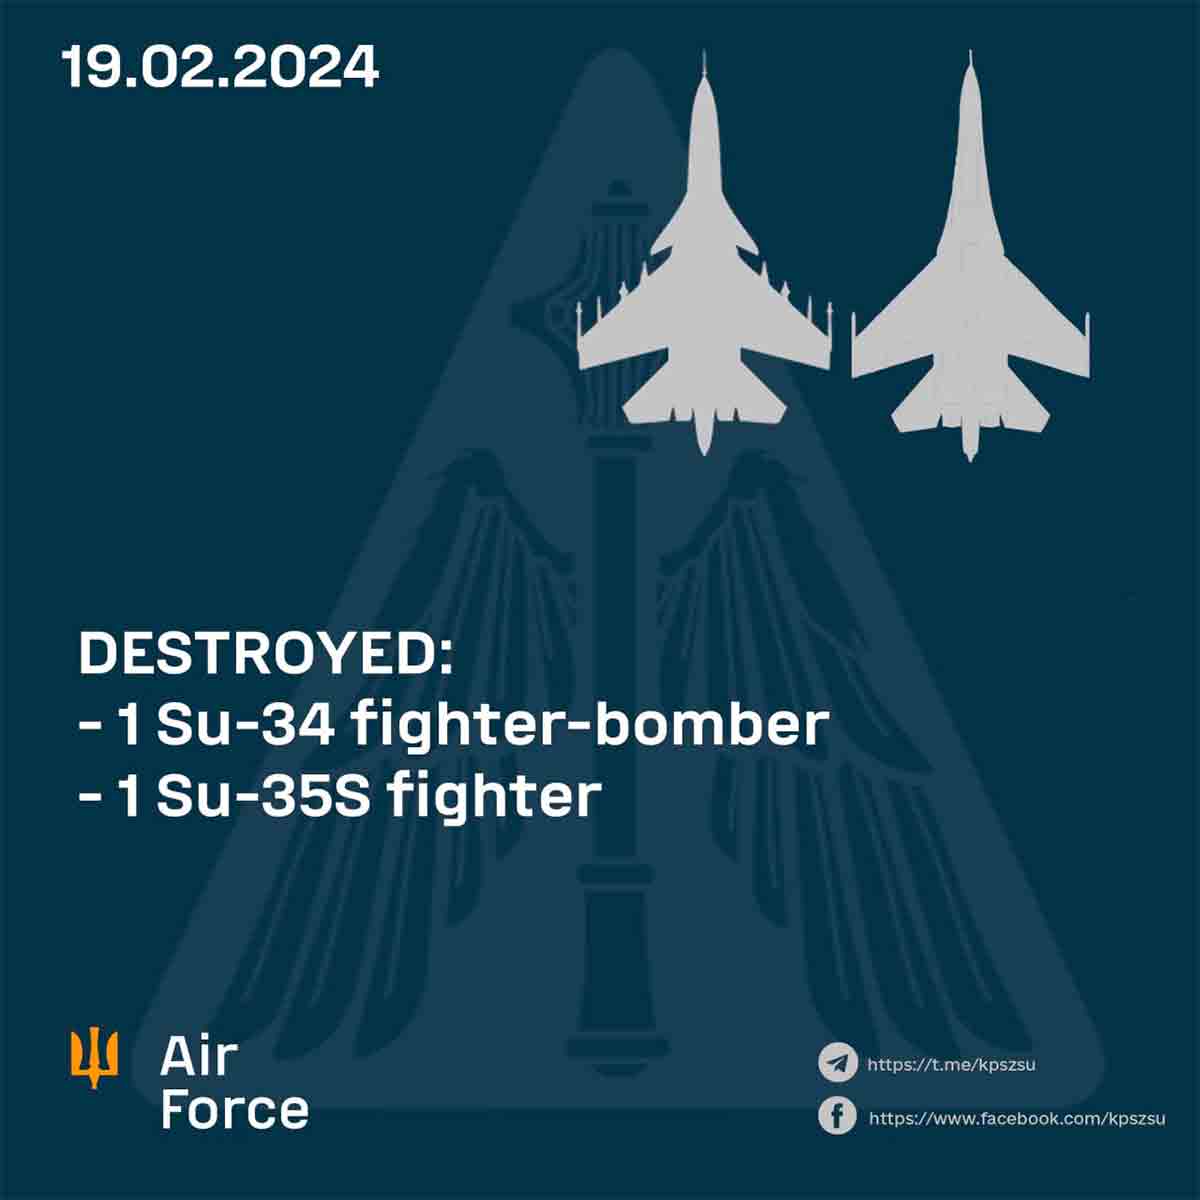 Forza Aérea Ucraina annuncia abbattimento di altri Due caccia Russi, totalizzando 6 aeromobili in tre giorni